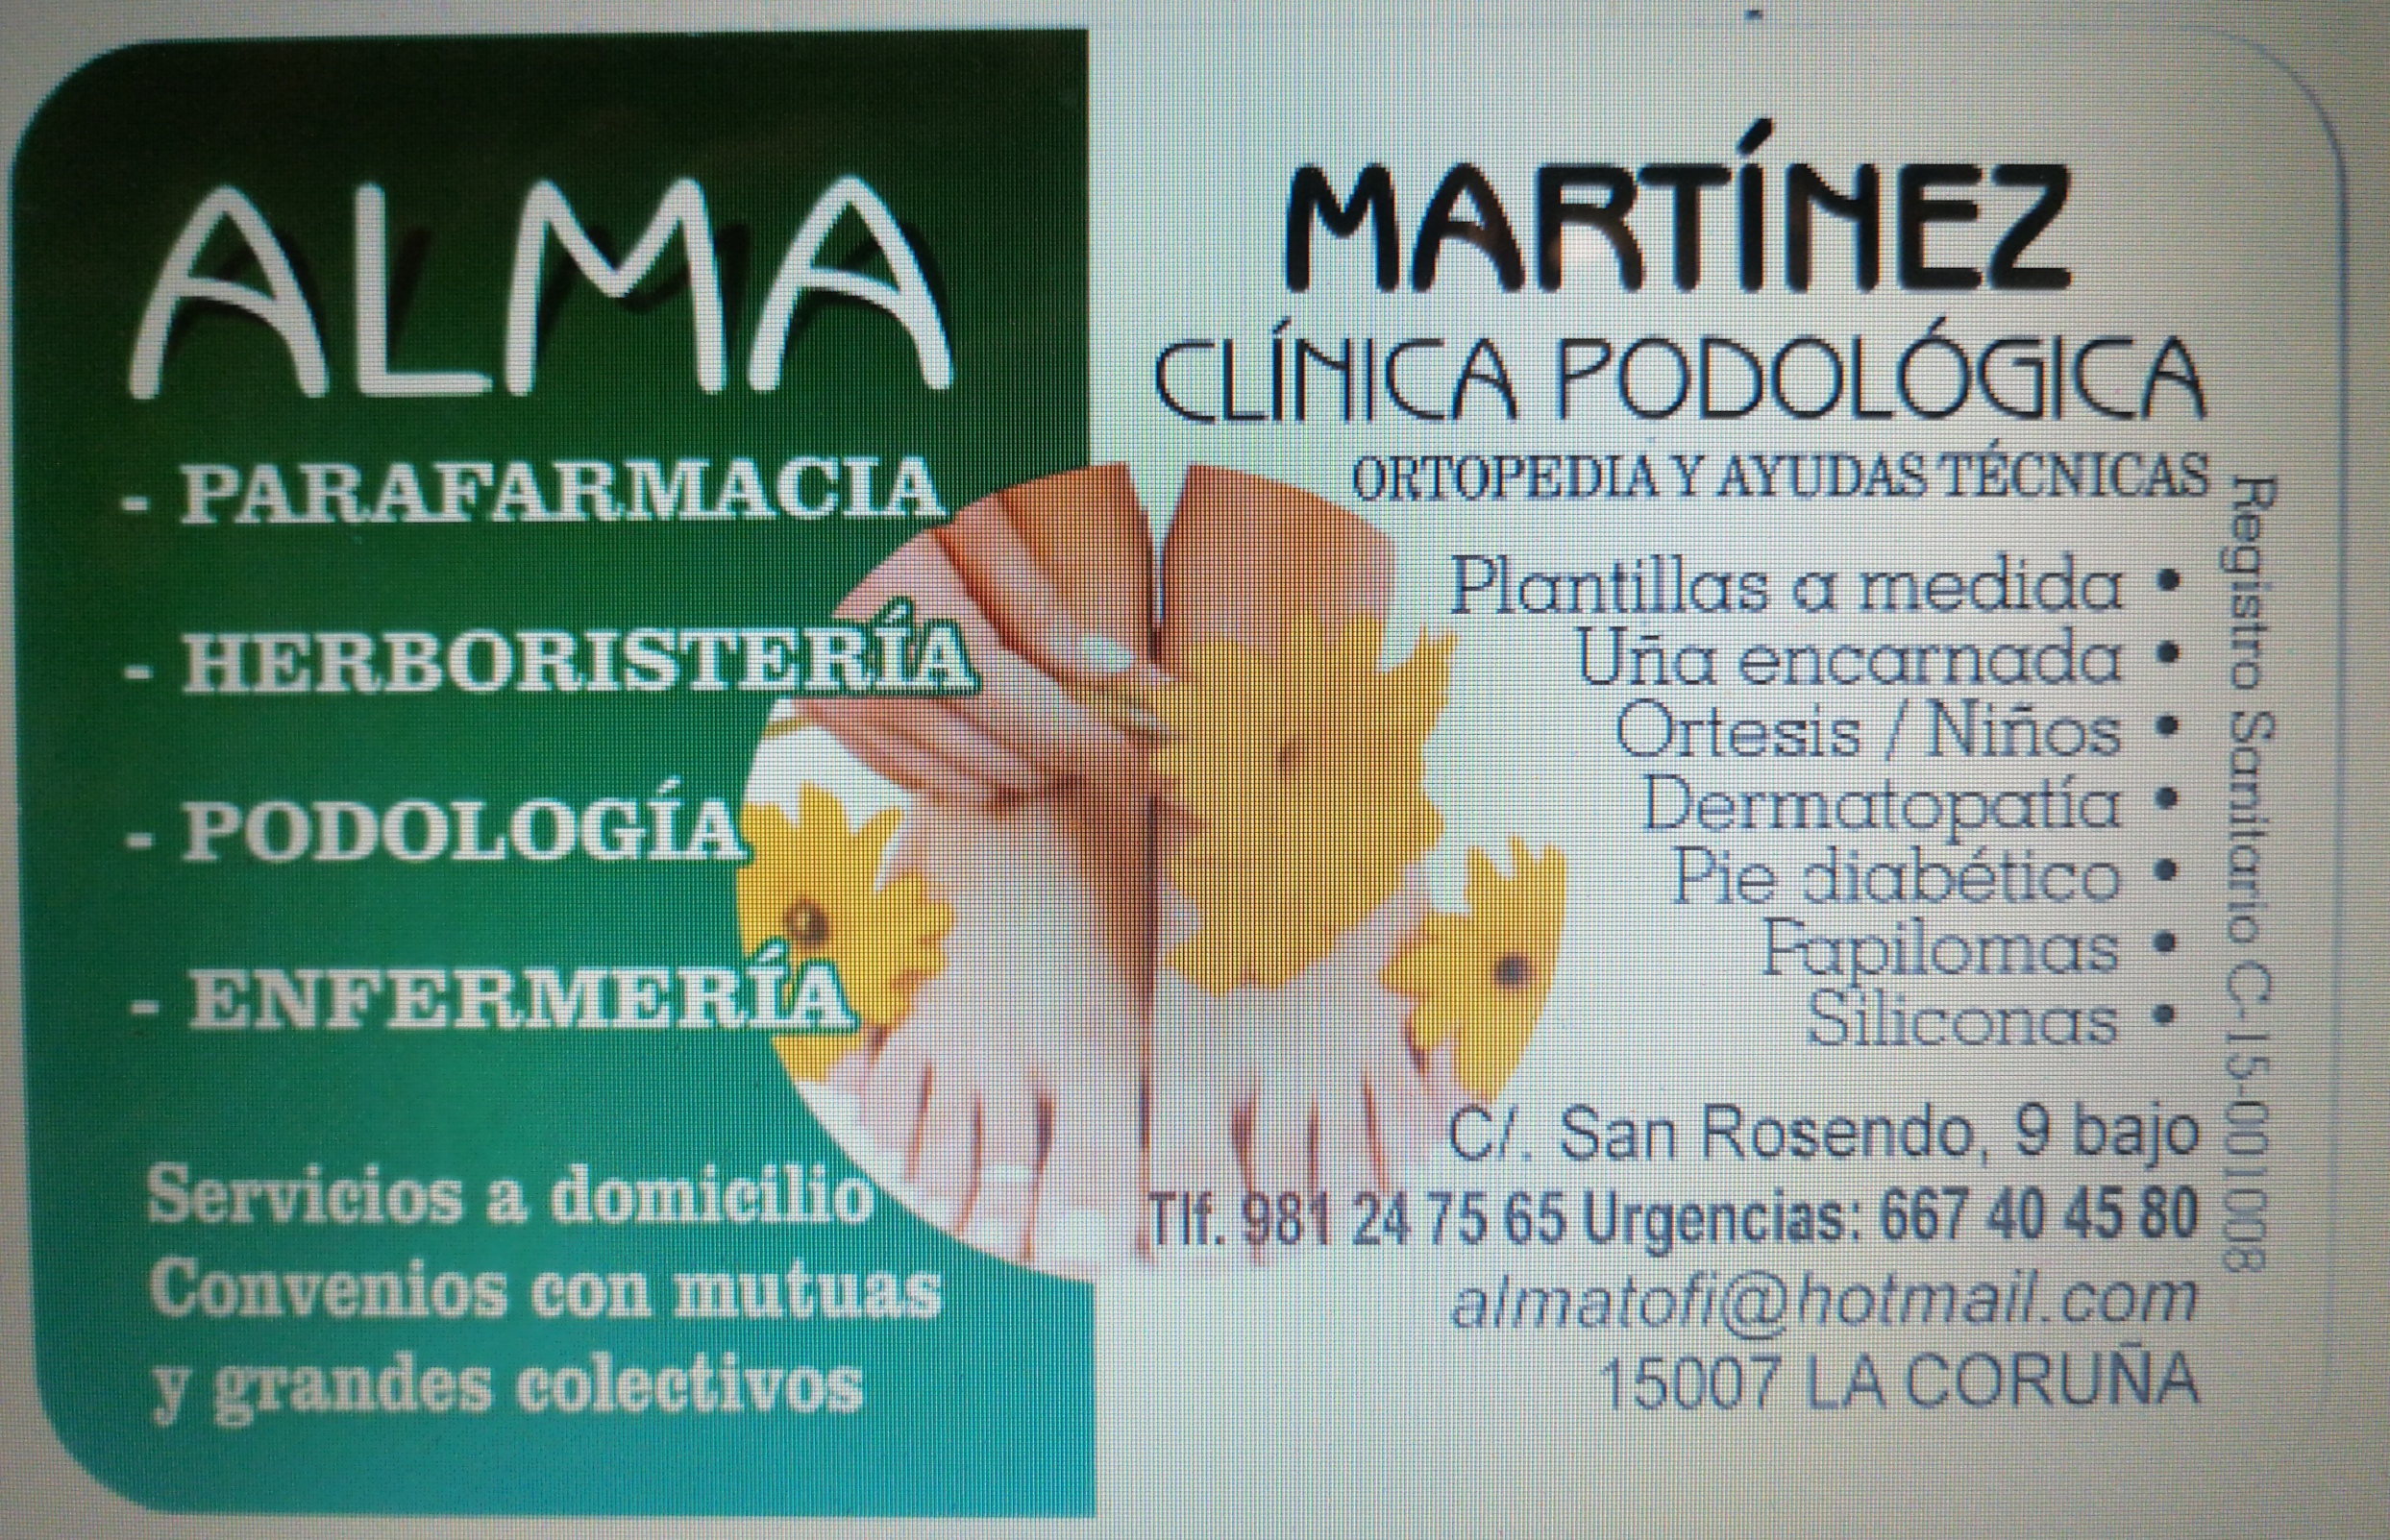 Logotipo de la clínica Clínica Podológica Martínez